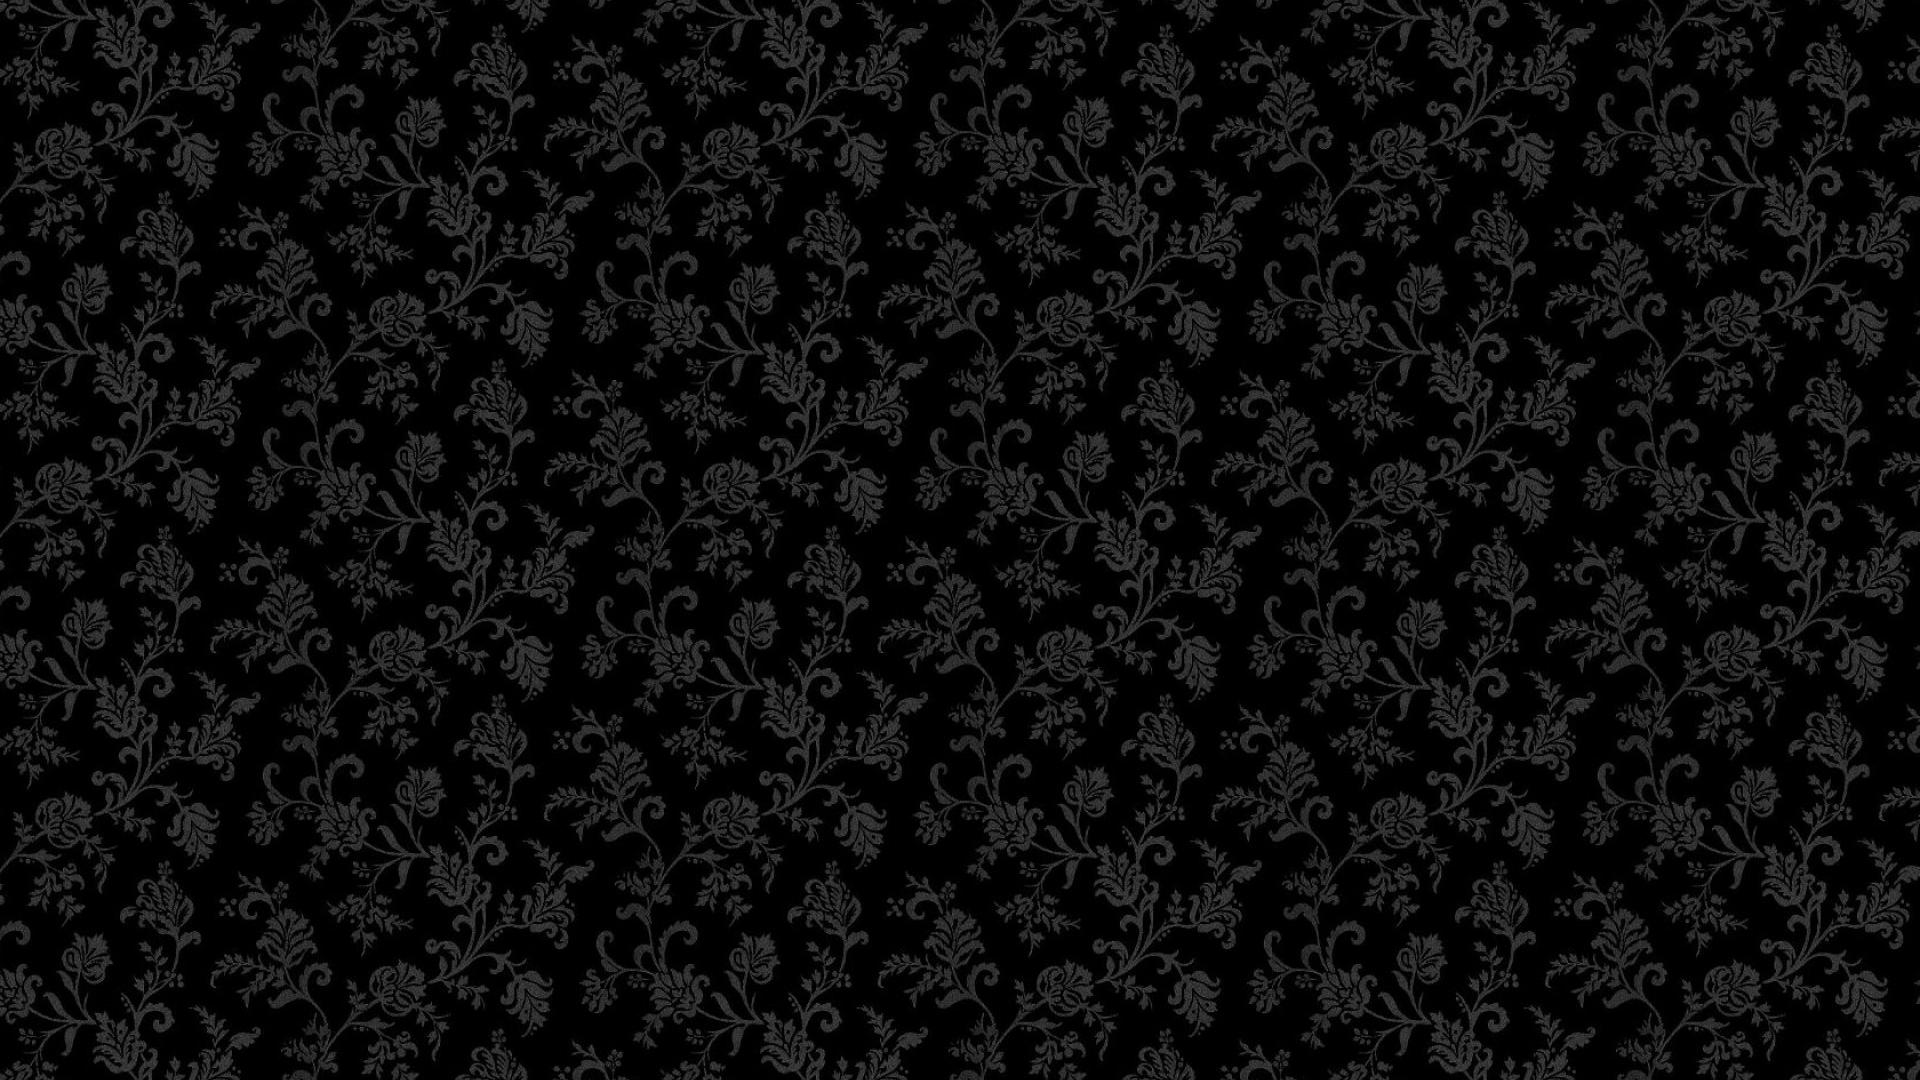 Pattern abstract flowers hd wallpaper - HQ Desktop